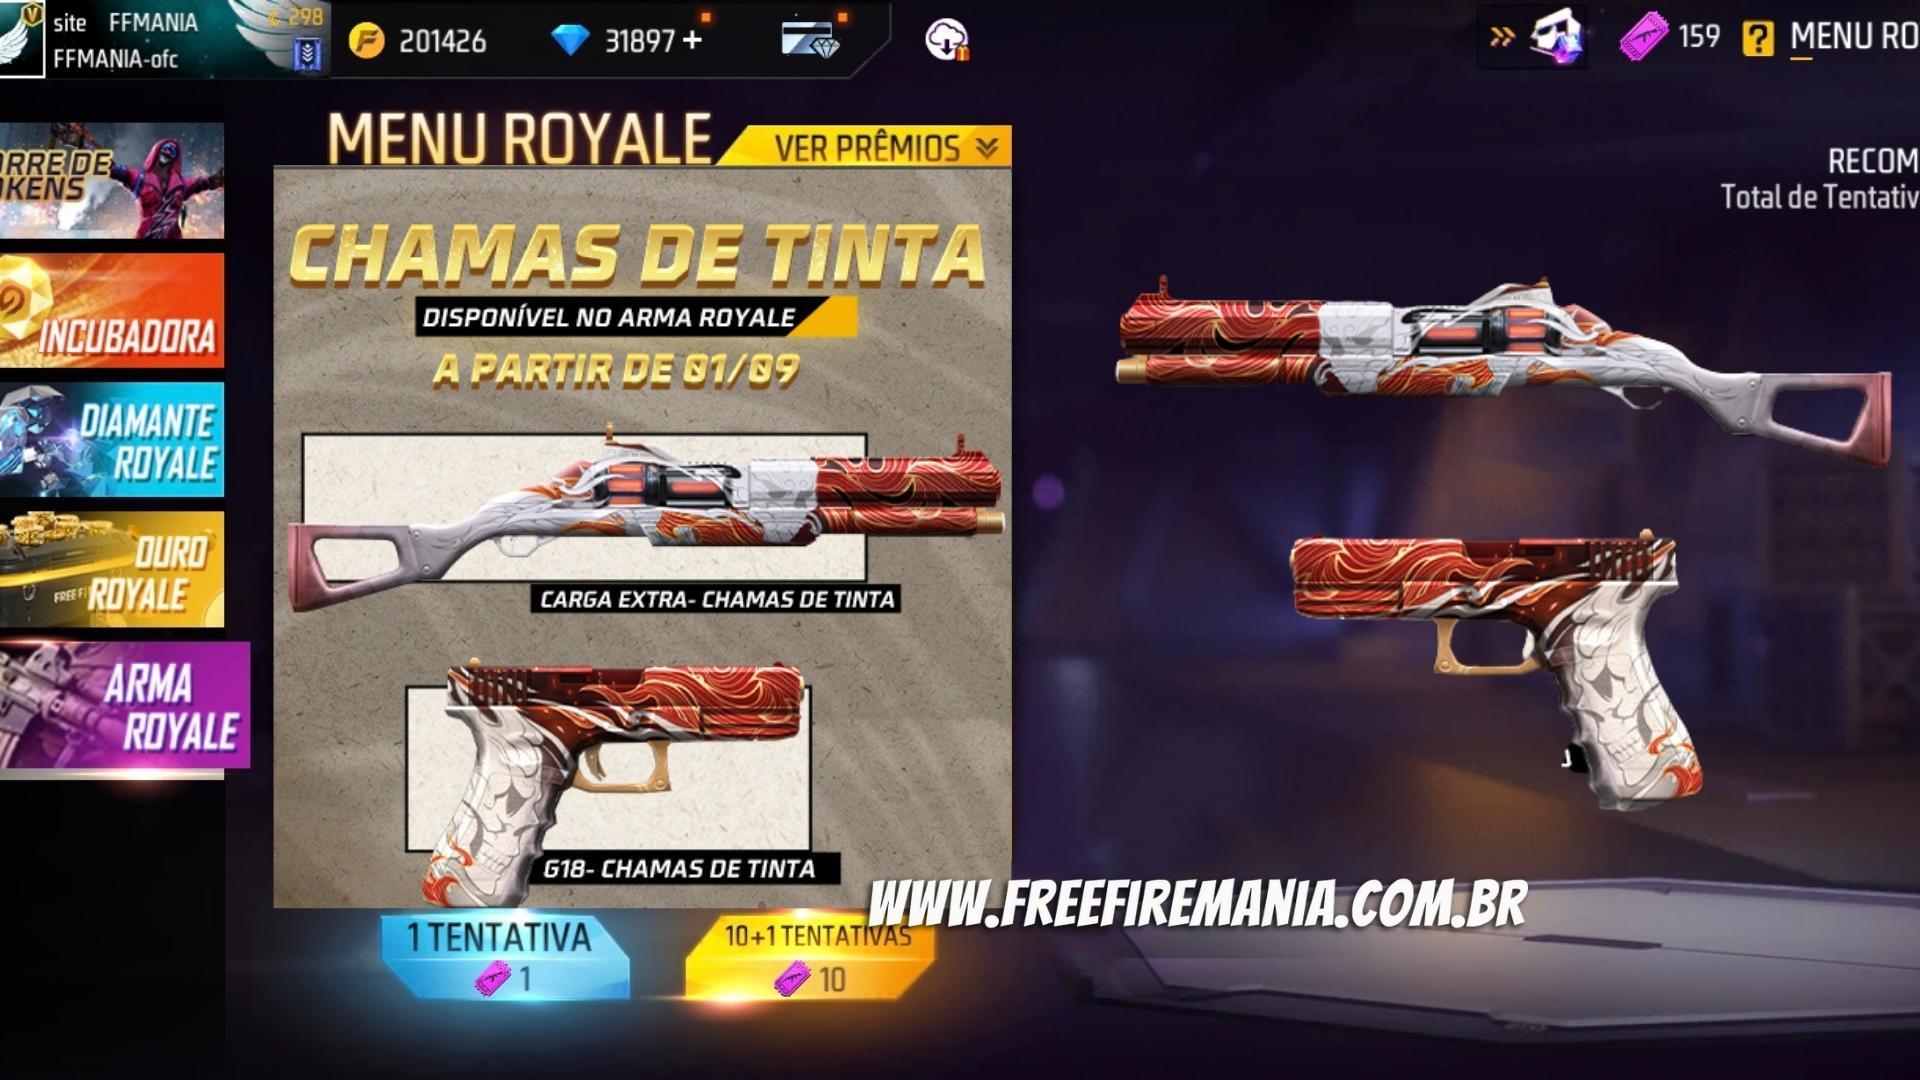 Arma Royale Free Fire Septiembre 2022: Cargo extra y G18 - Llamas de tinta